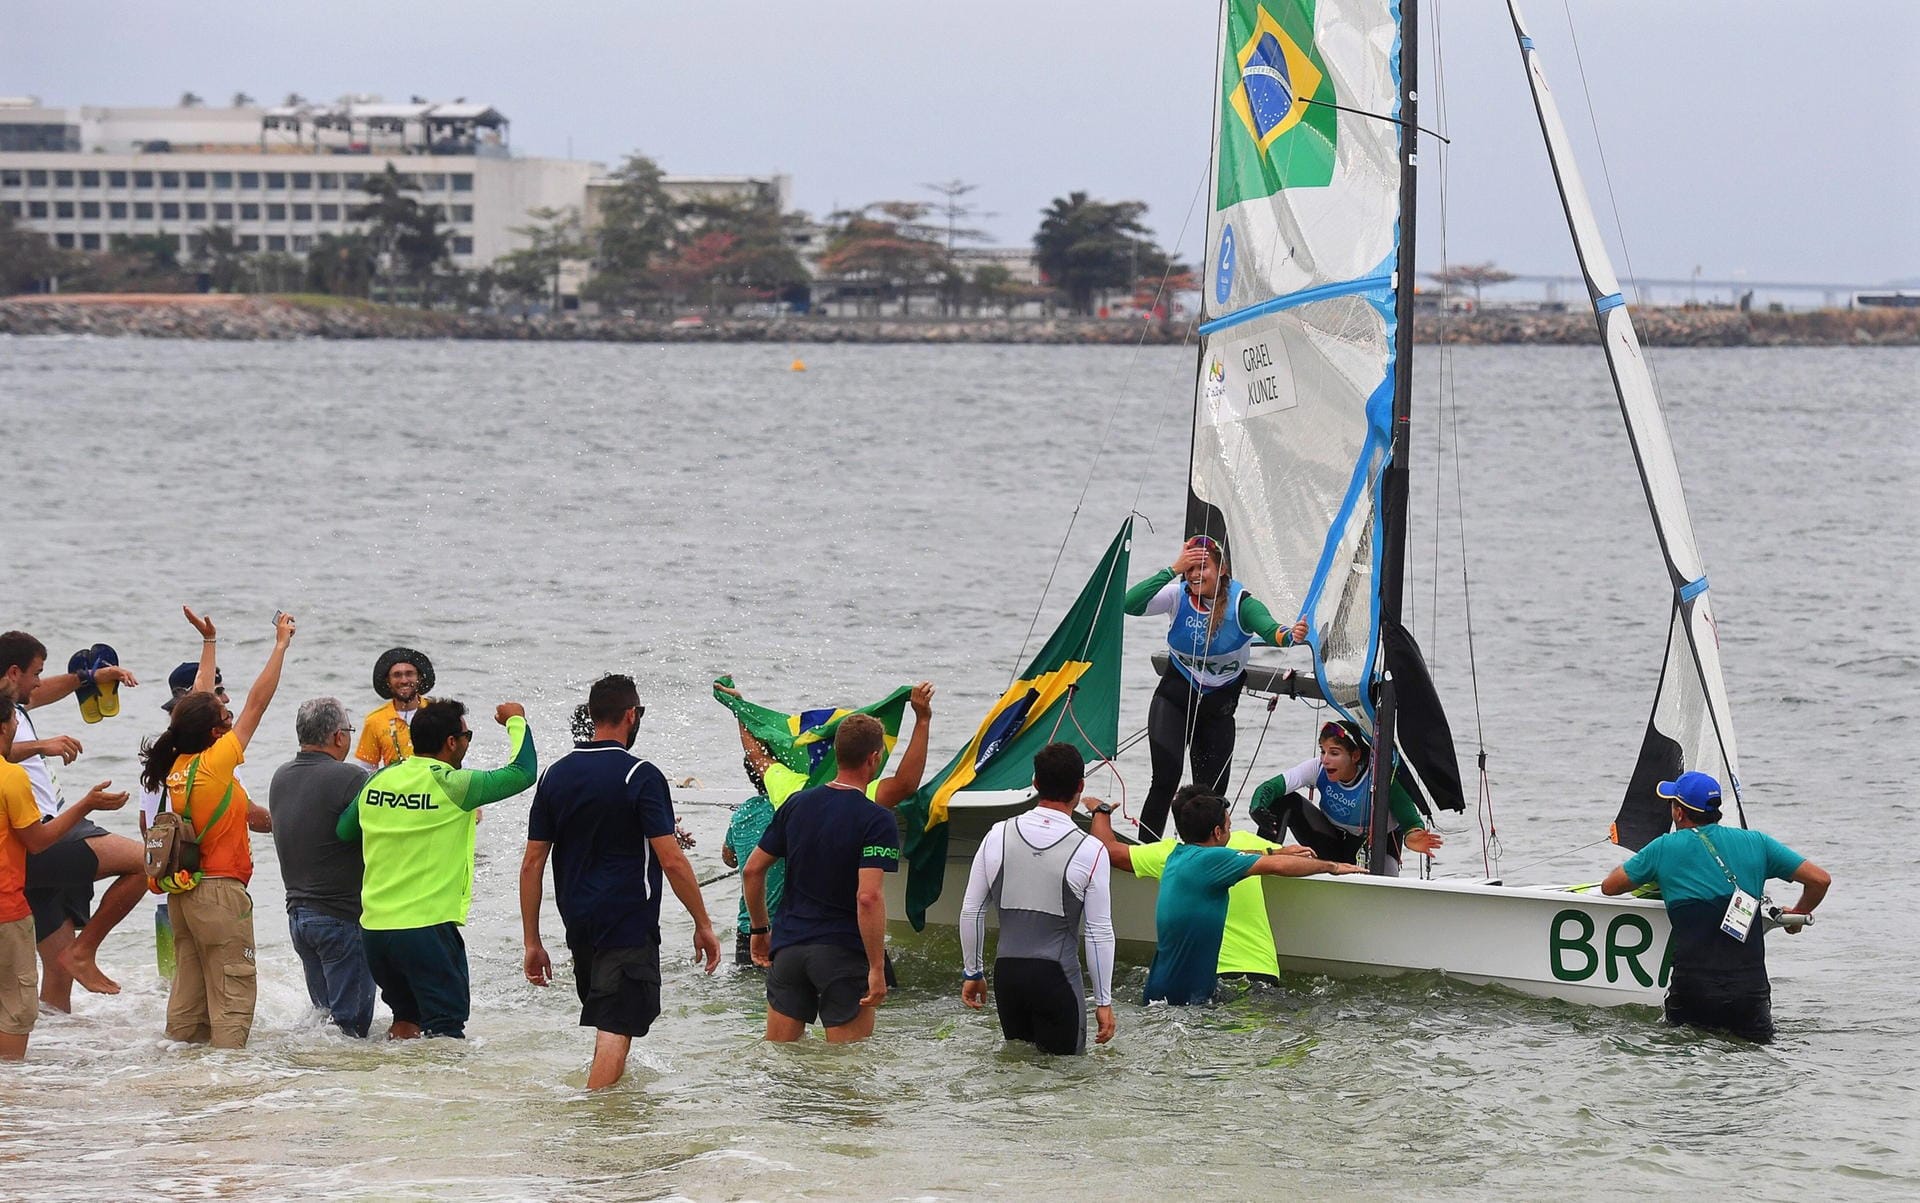 Großer Empfang für die neuen Olympiasiegerinnen in der 49er Bootsklasse im Segeln: Nach ihrem Gewinn der Goldmedaille werden die Brasilianerinnen Martine Soffiatti Grael und Kahena Kunze von ihren Landsleuten im flachen Uferbereich gefeiert.